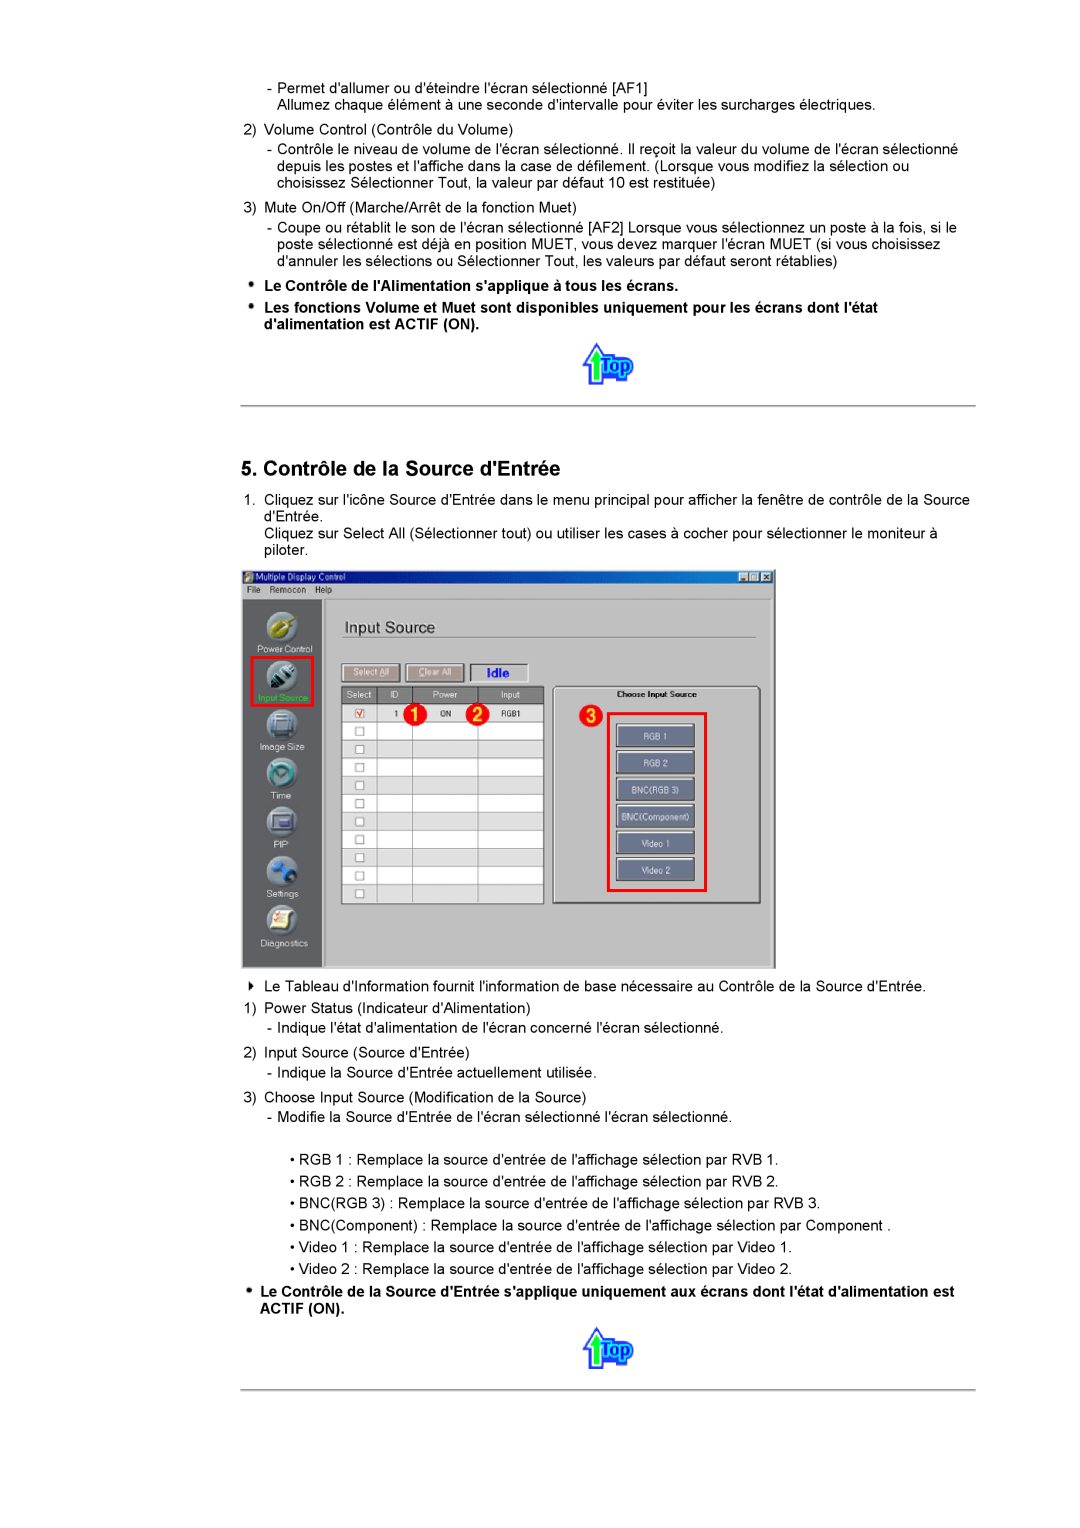 Samsung CK40PSNSF/EDC manual Contrôle de la Source dEntrée, Le Contrôle de lAlimentation sapplique à tous les écrans 